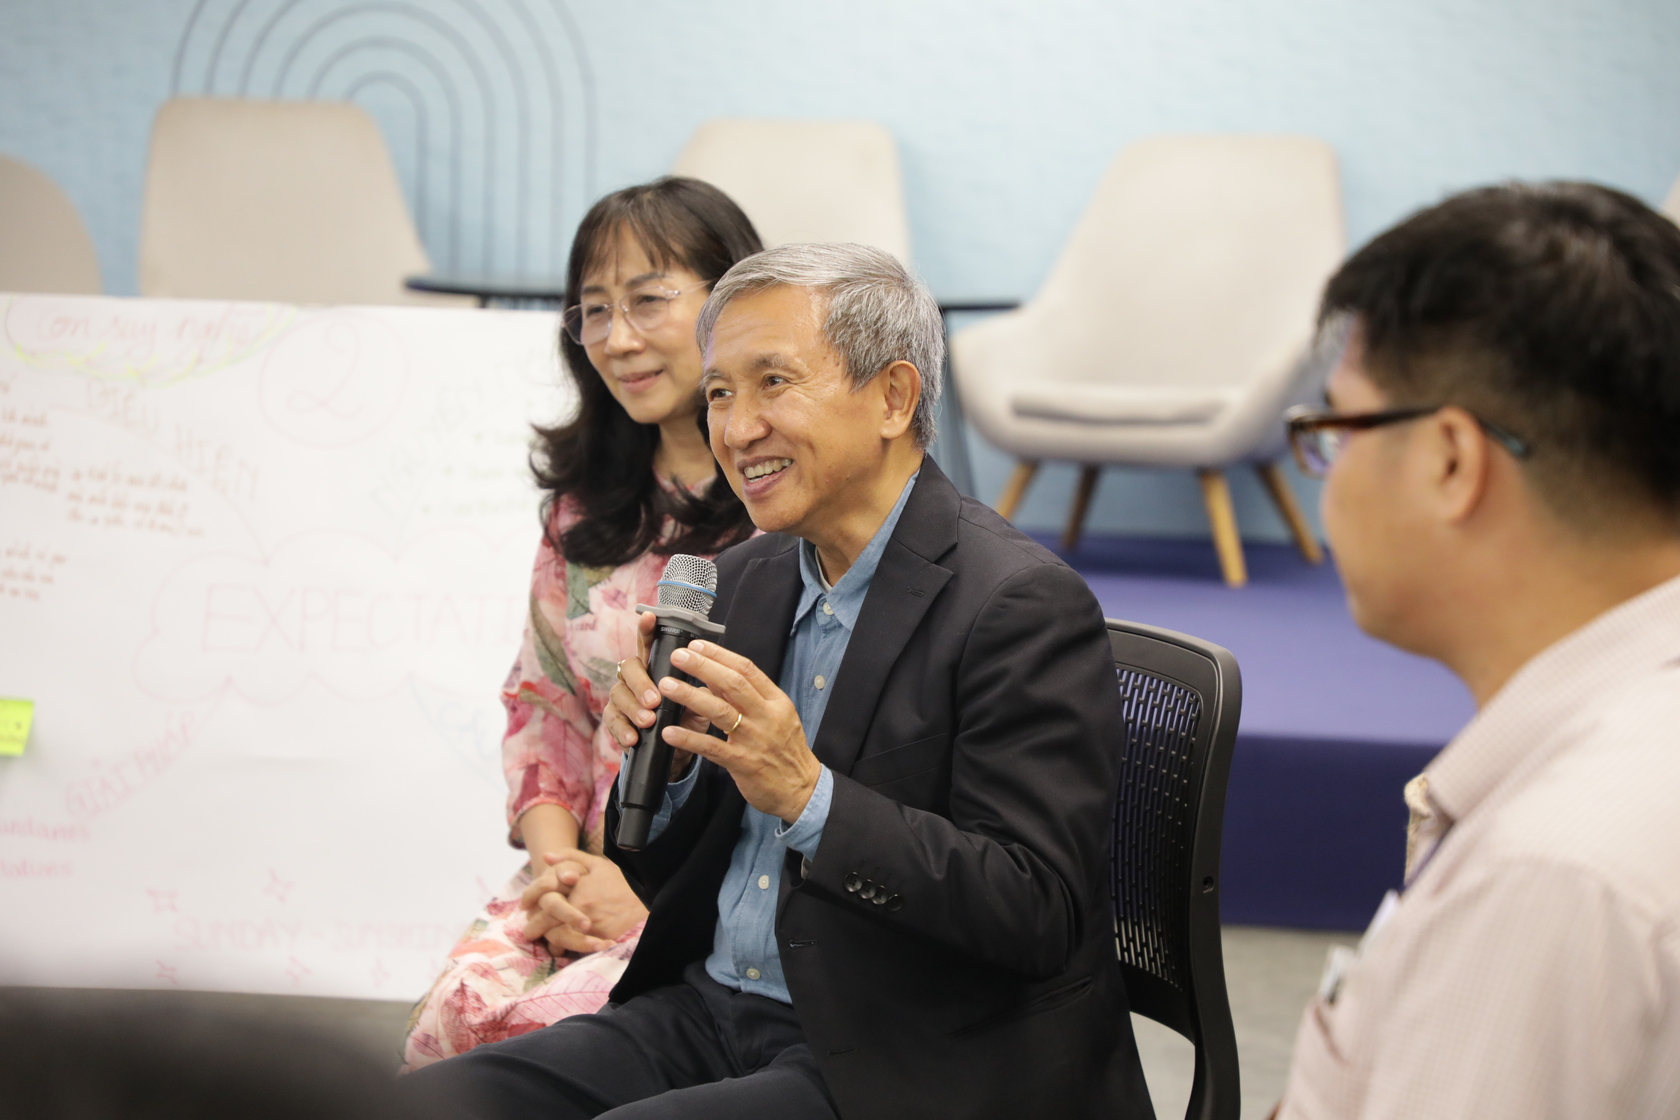 Tiến sĩ Nguyễn Nam chia sẻ khía cạnh văn hóa - xã hội của quan hệ gia đình